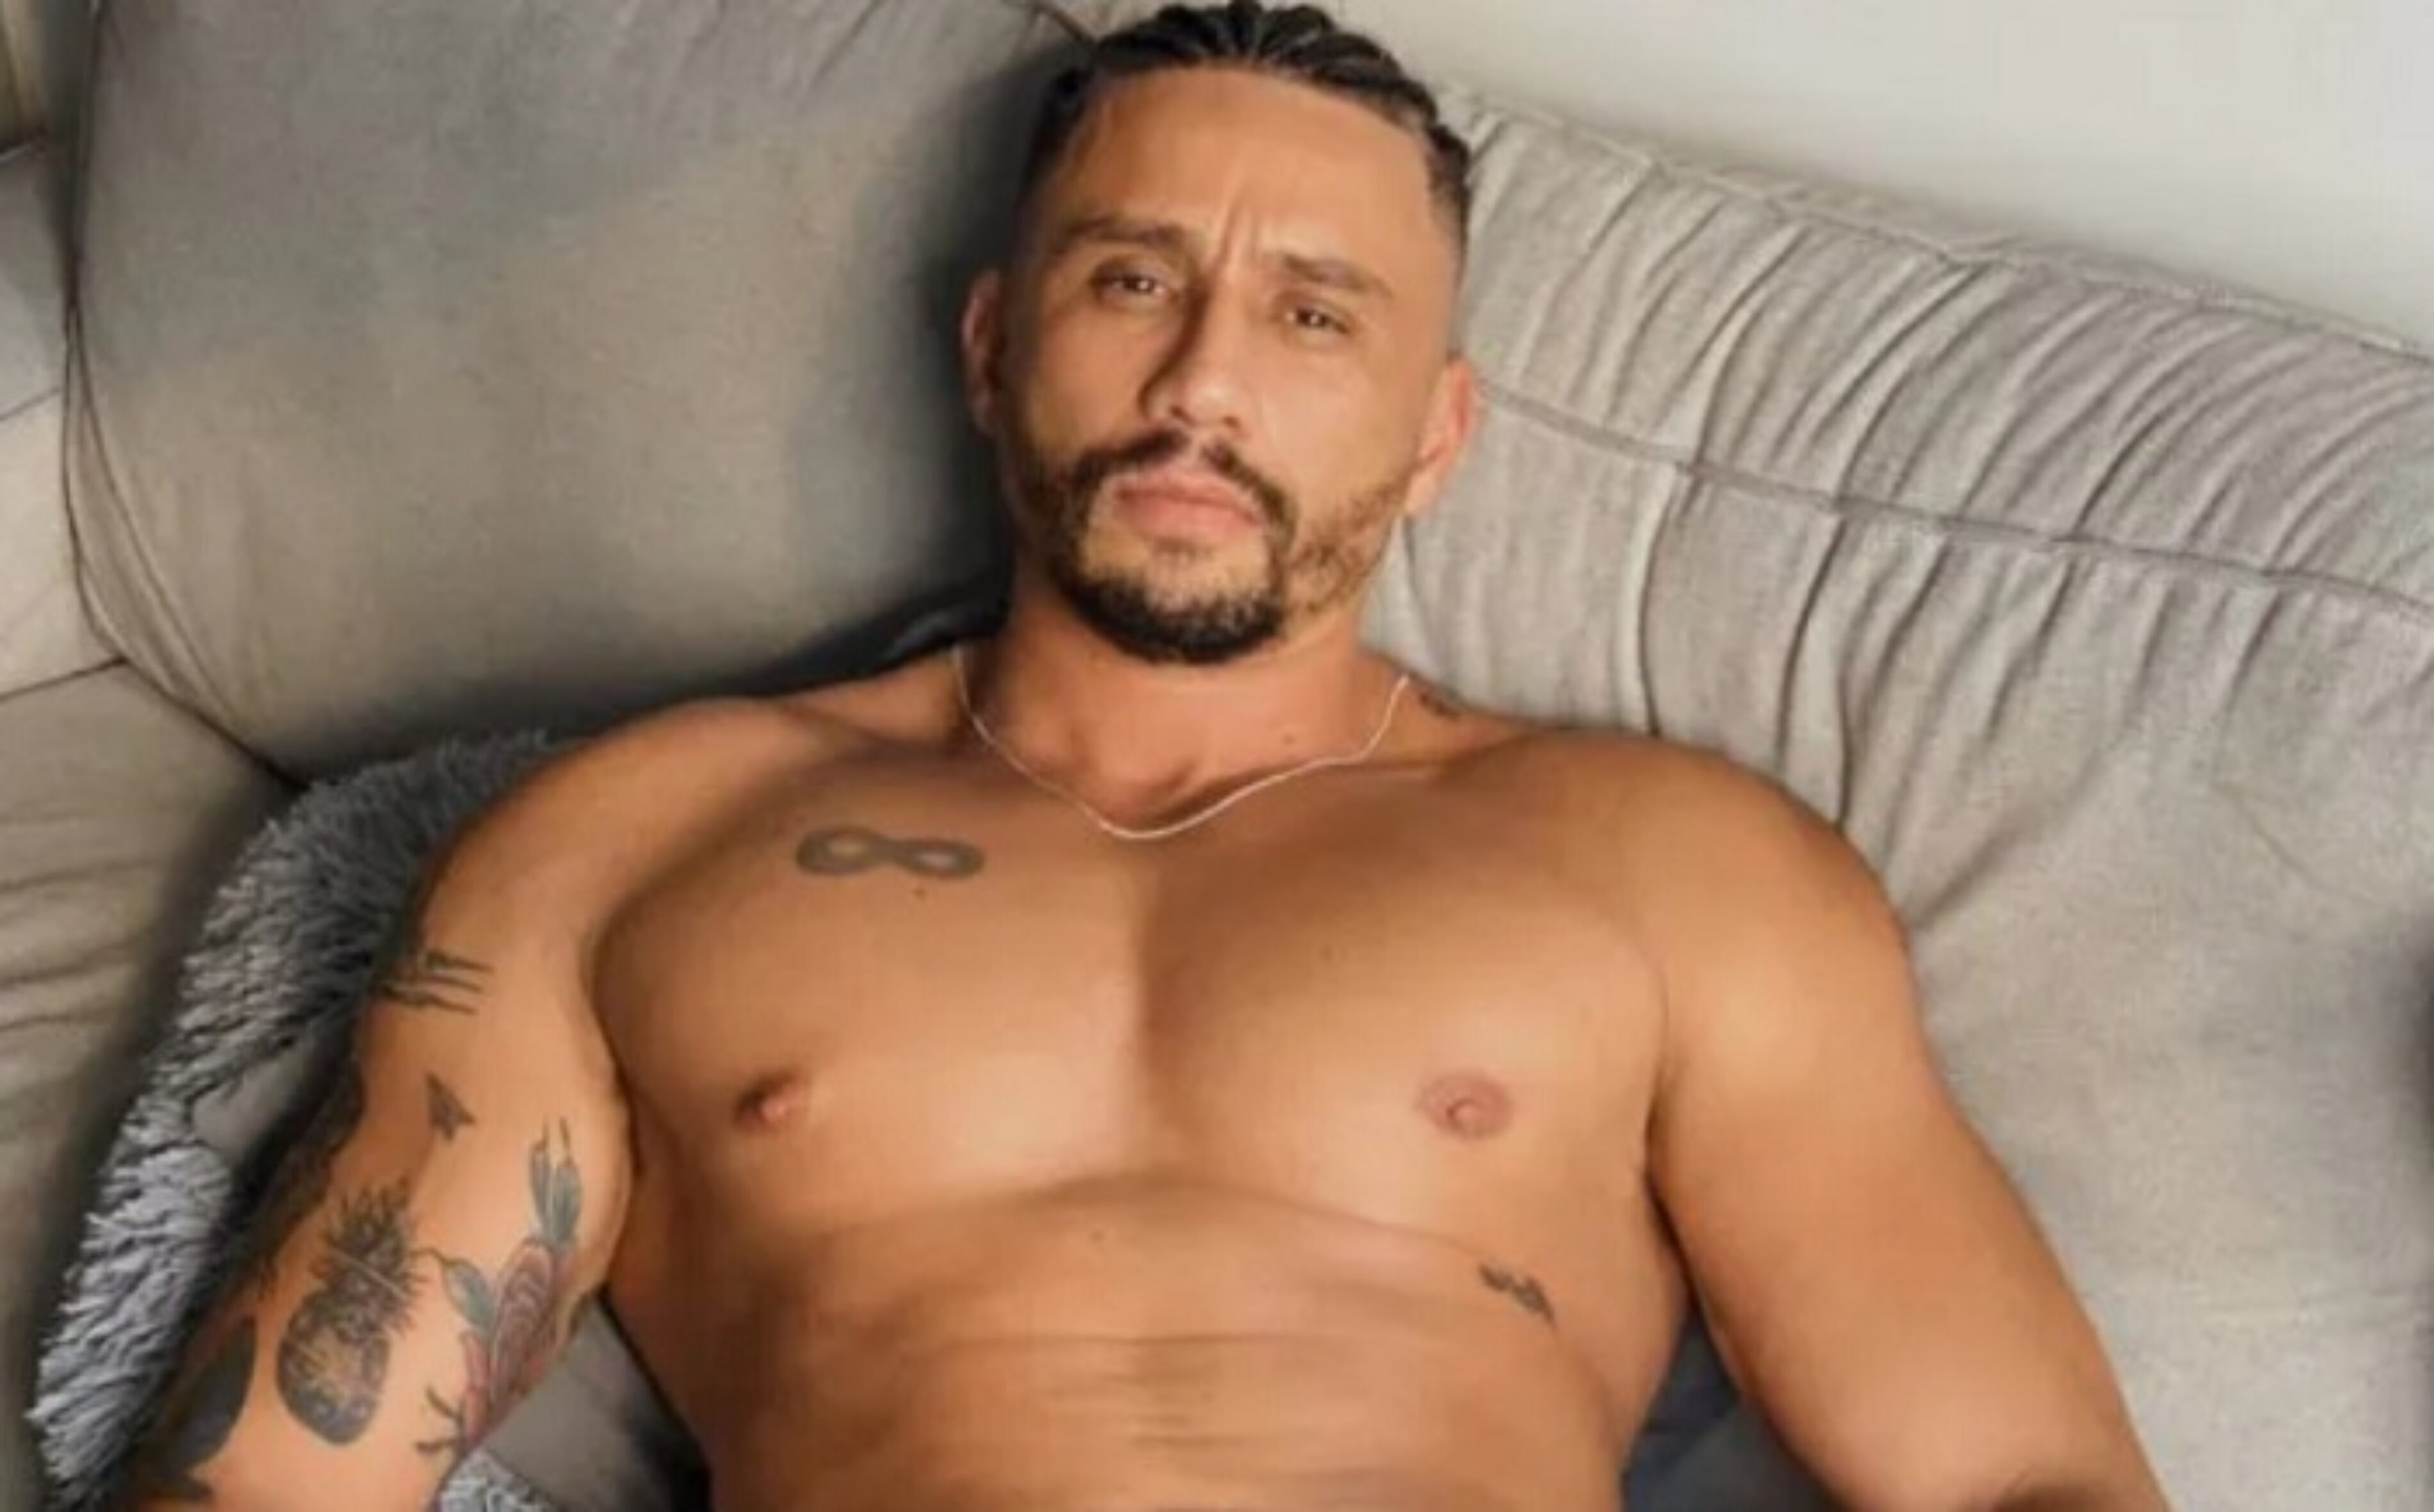 Internet Porn Star Fabricio Da Silva Claudino Arrested For S